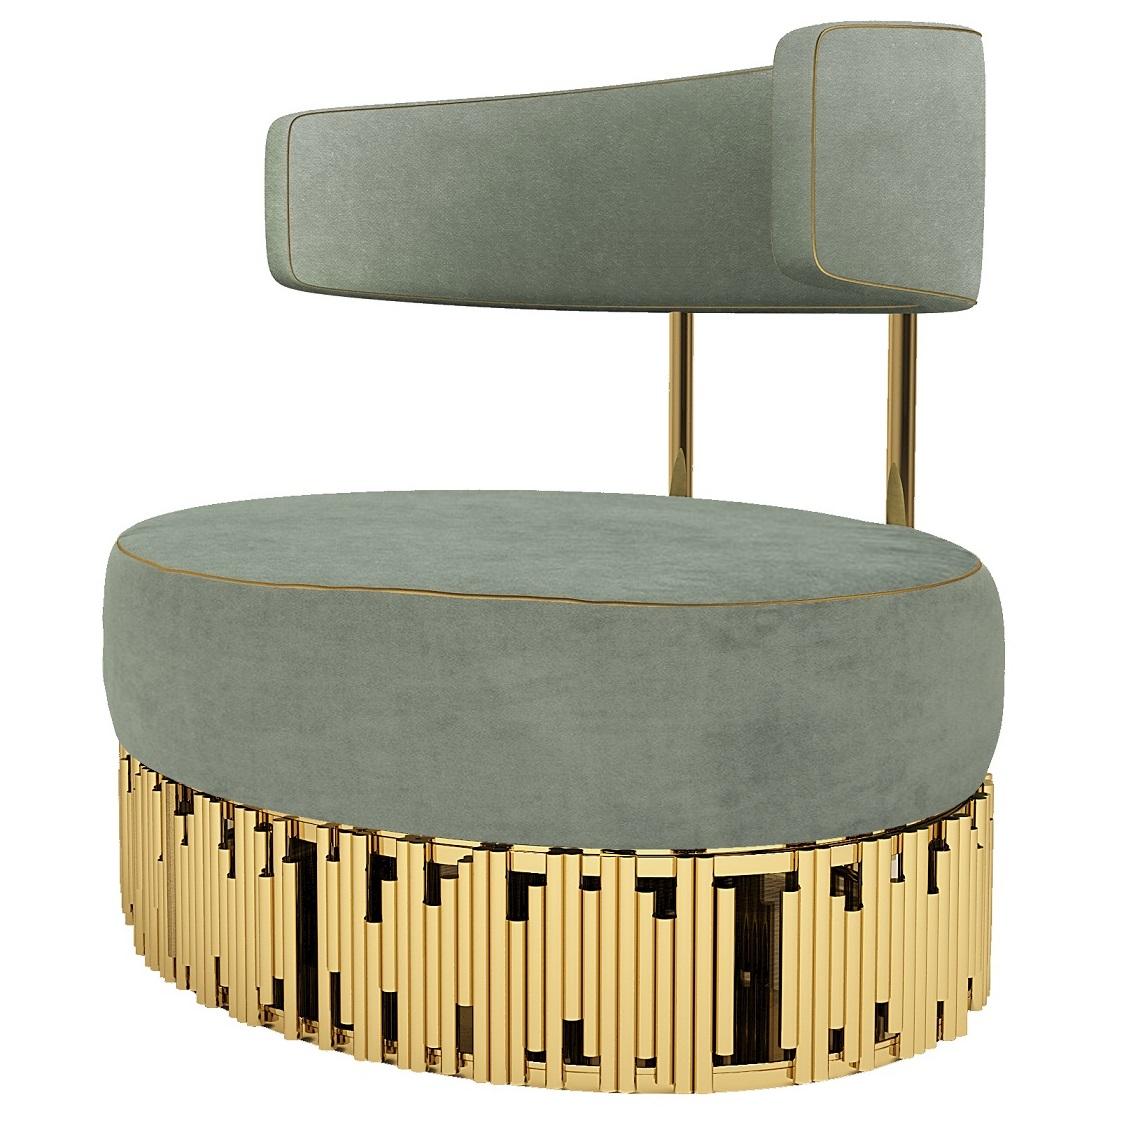 Der Sessel ist mit goldenen Kedern und goldenen Streifen versehen und hat eine moderne Silhouette. 
MATERIALIEN:
Polsterung : Aqua-Samt und Goldpaspel
Beine : Messing poliert
Setzen Sie sich mit uns in Verbindung, um sich über die